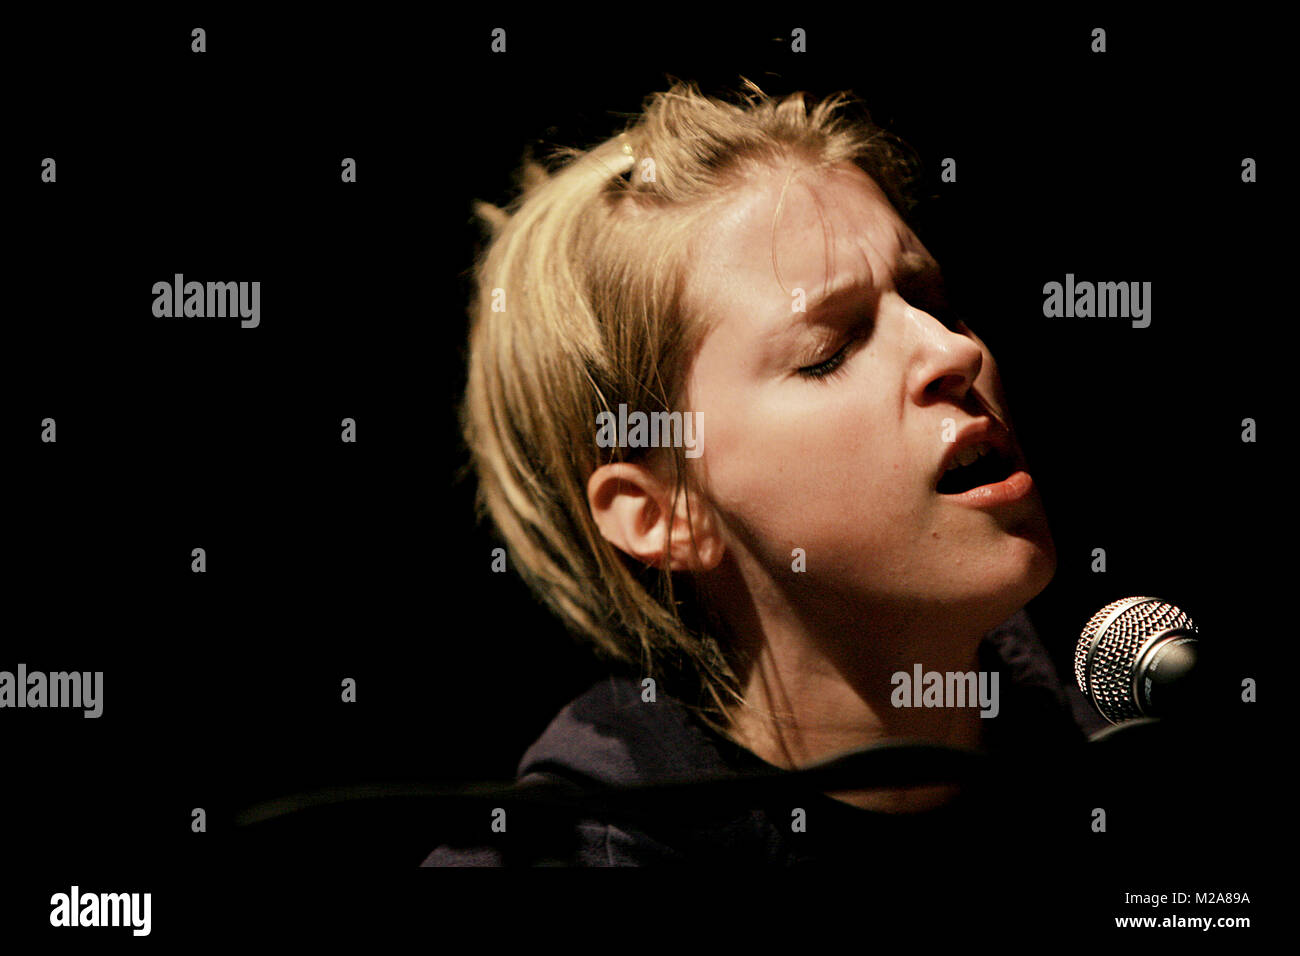 The Norwegian singer-songwriter and musician Susanne Sundfør performs a live concert at the Danish showcase festival Spot Festival 2007 in Aarhus. Denmark, 02/06 2007. Stock Photo